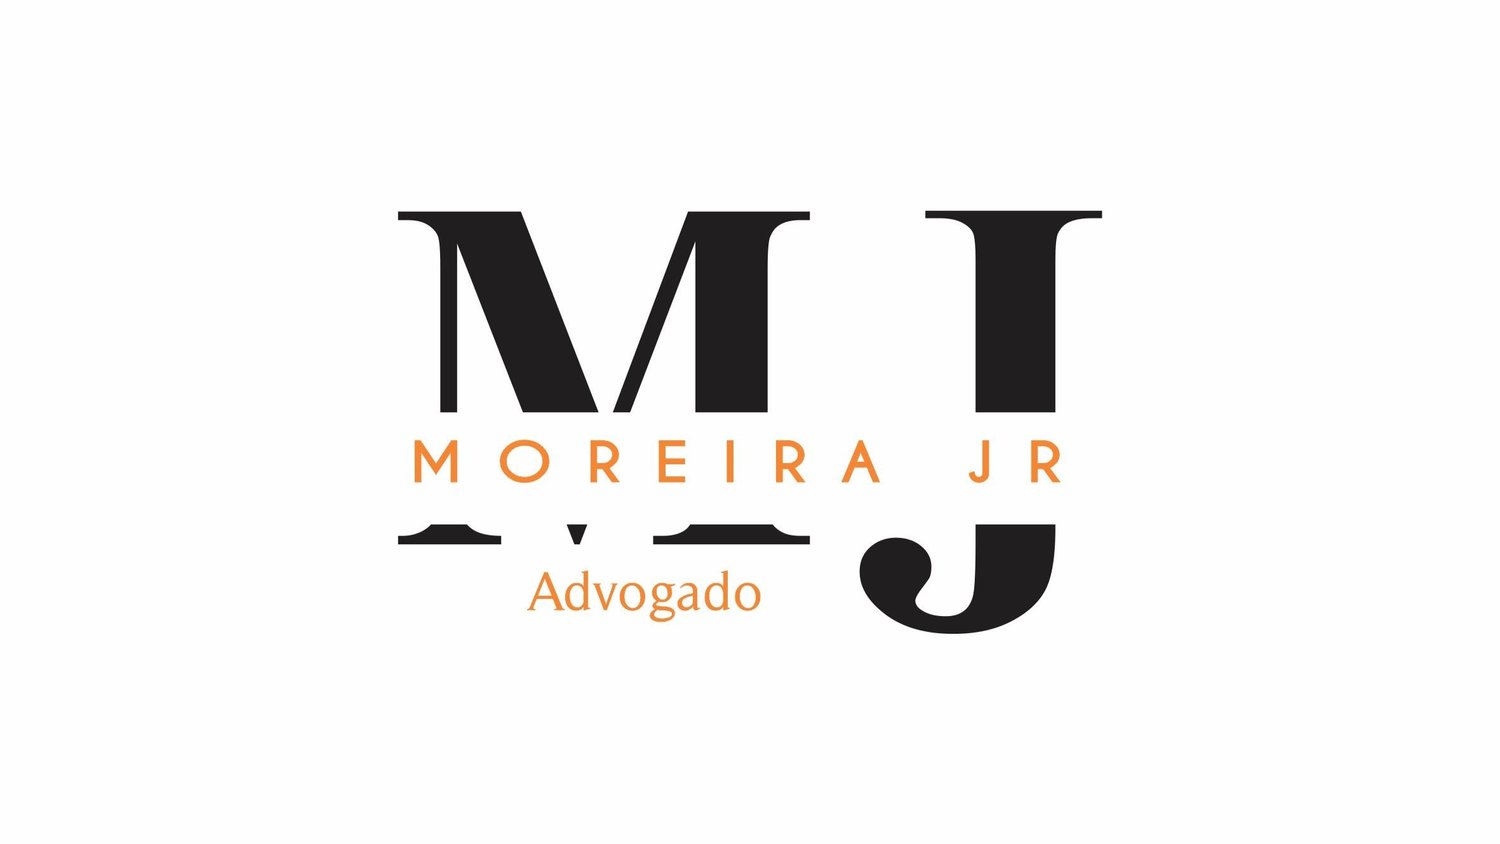 Moreira Jr. Tributarista